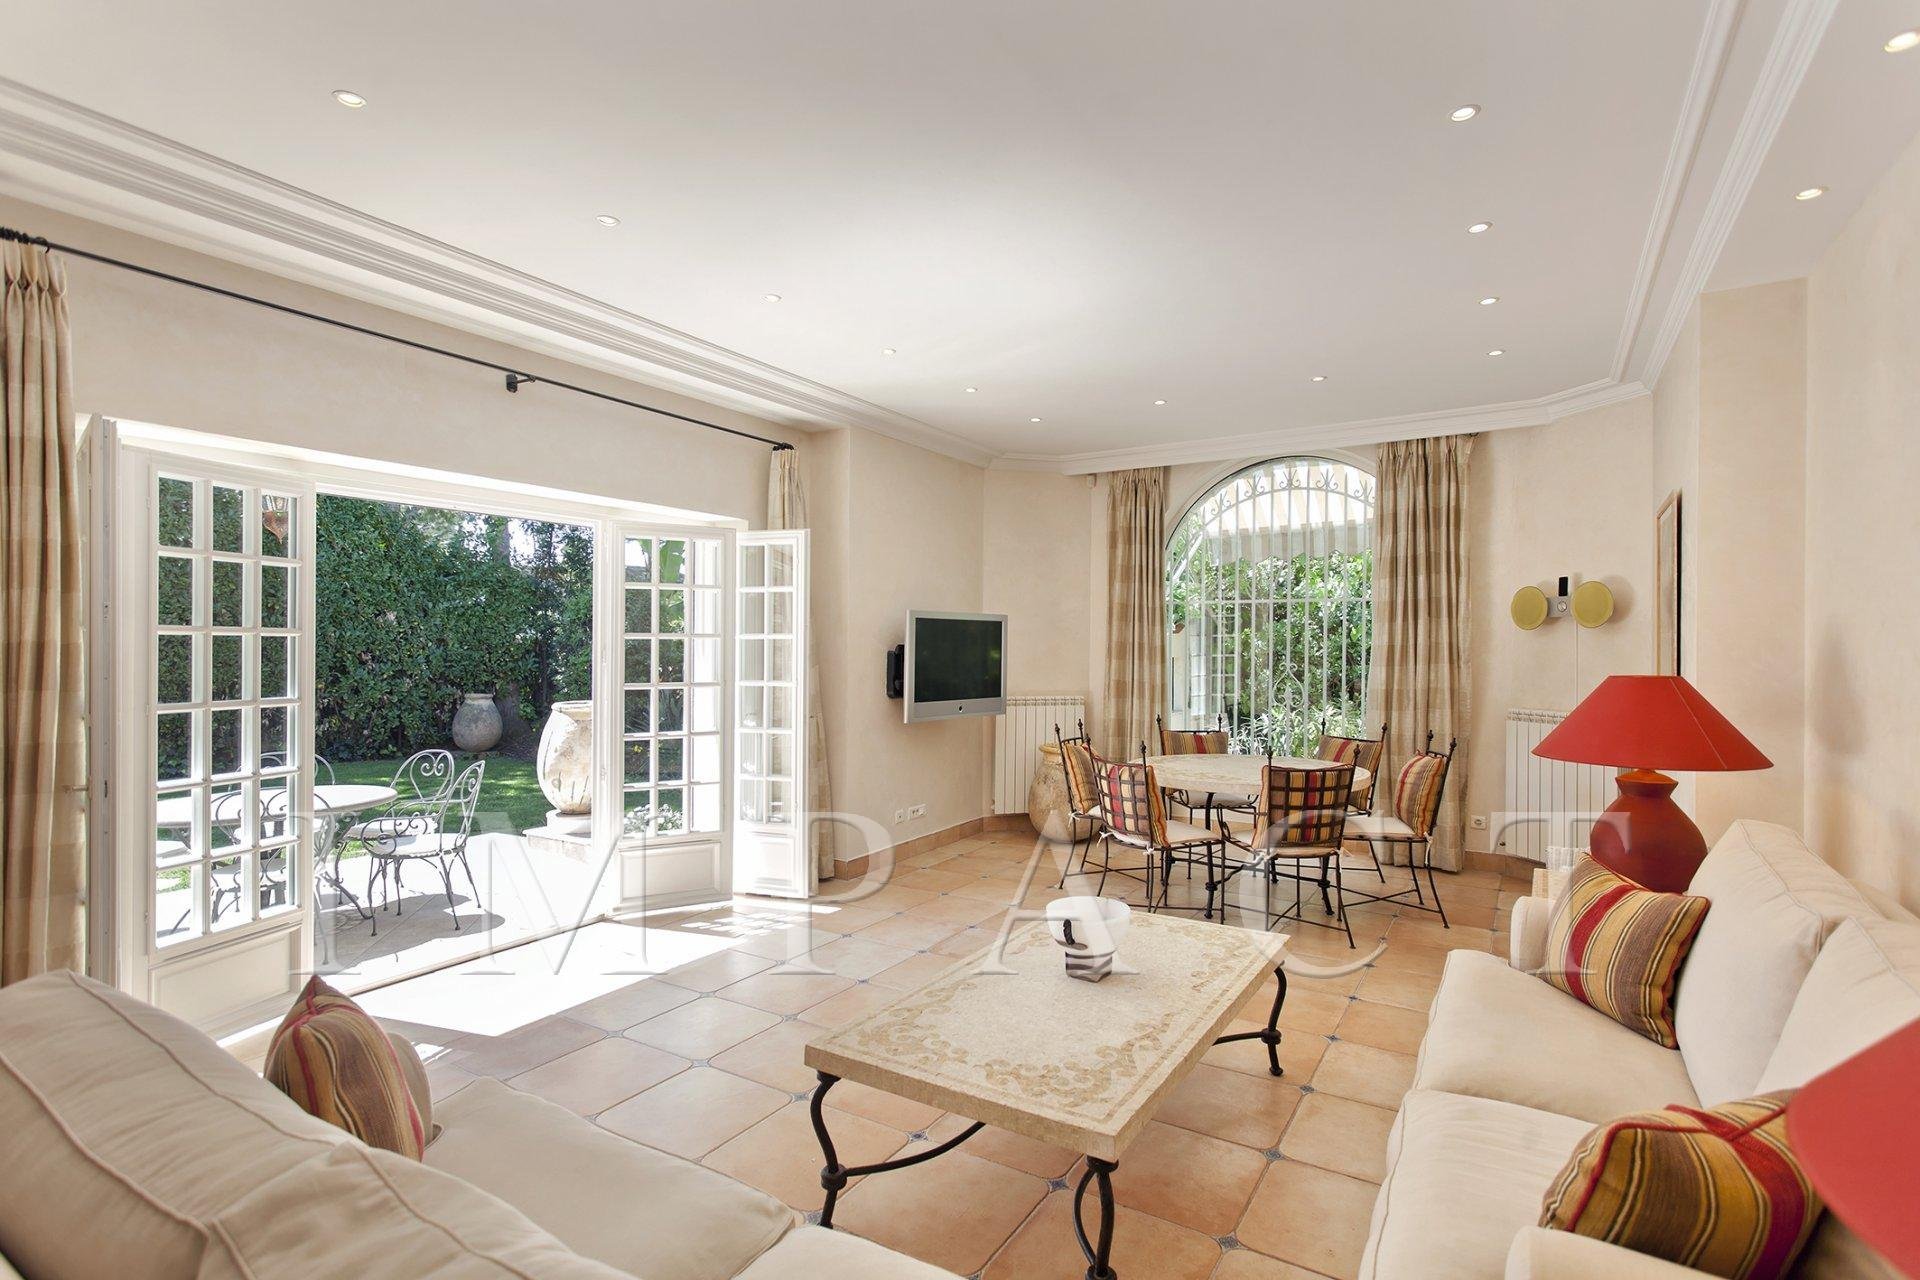 Superb provencal villa to rent cap d'Antibes